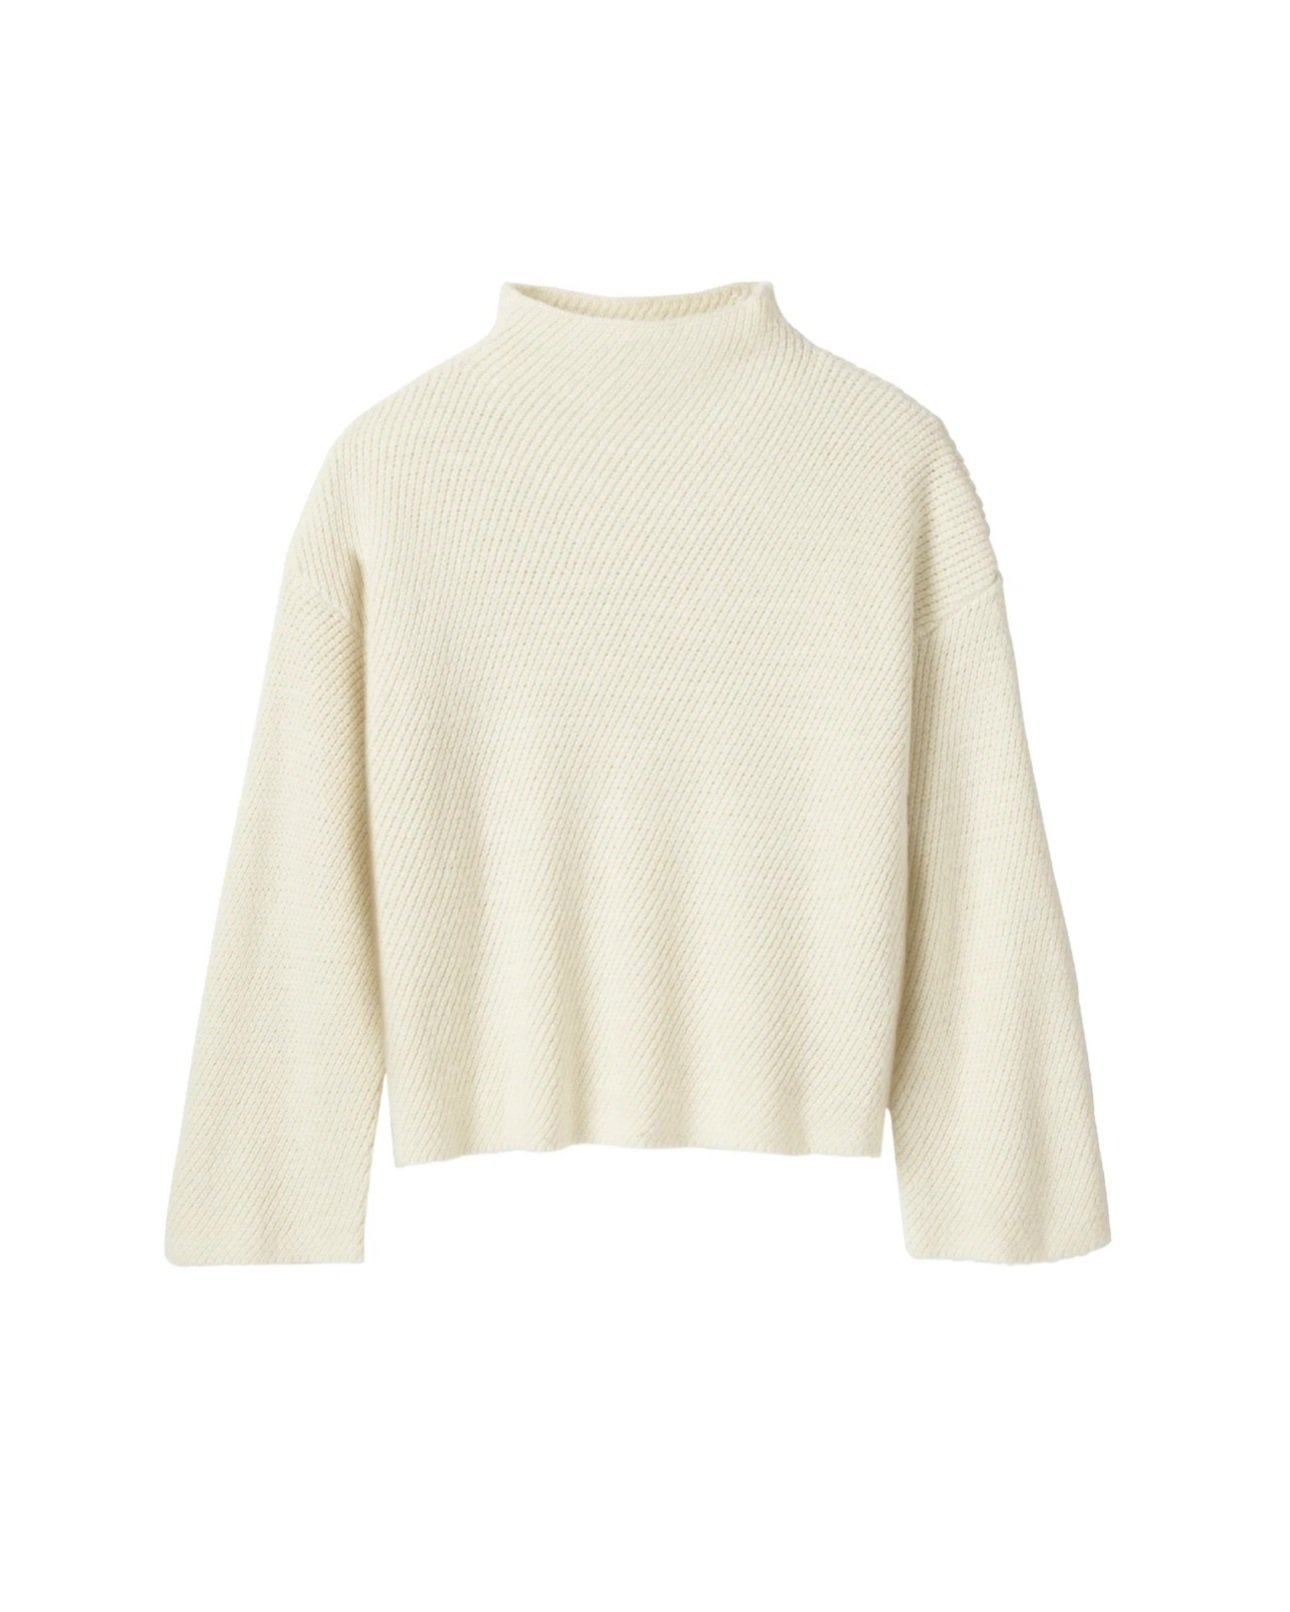 Ivory Earnest sweater